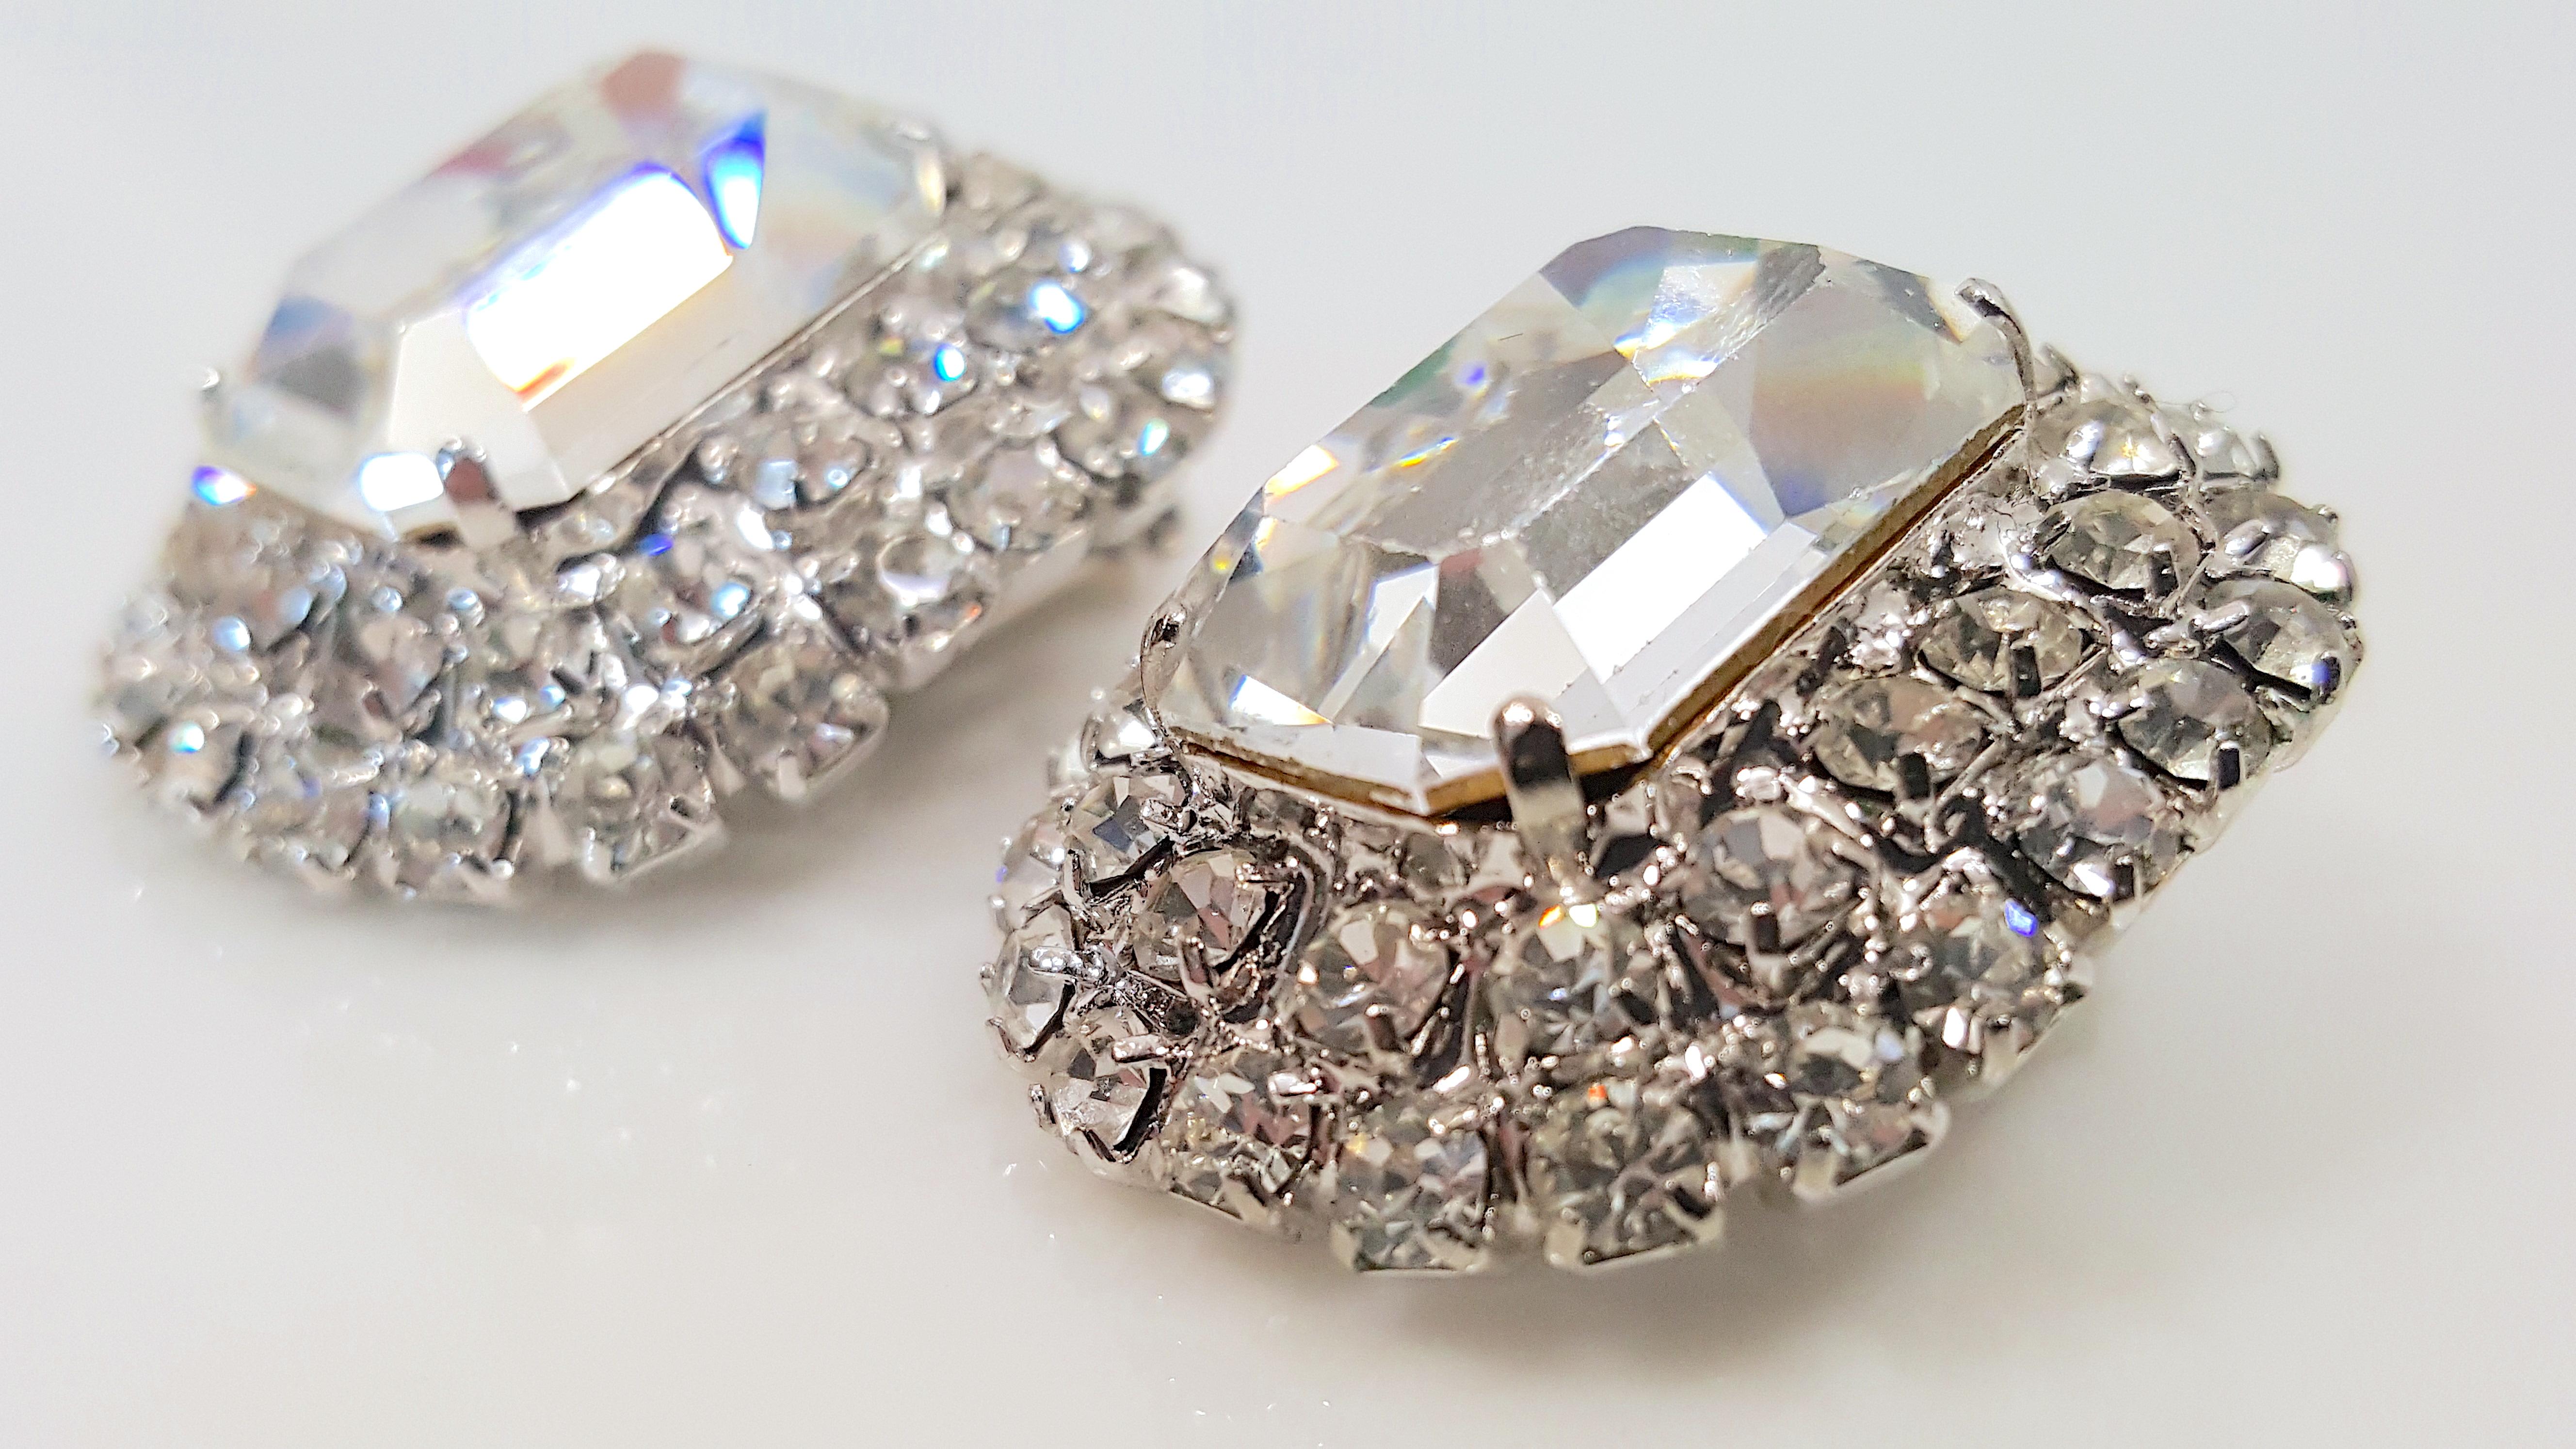 Alors qu'il fabriquait des bijoux fantaisie haute-couture similaires à ceux de Christian Dior au milieu du siècle dernier, le designer Max Muller, basé près de Kaufbeuren, en Allemagne de l'Ouest, a créé ces boucles d'oreilles en cristal argenté